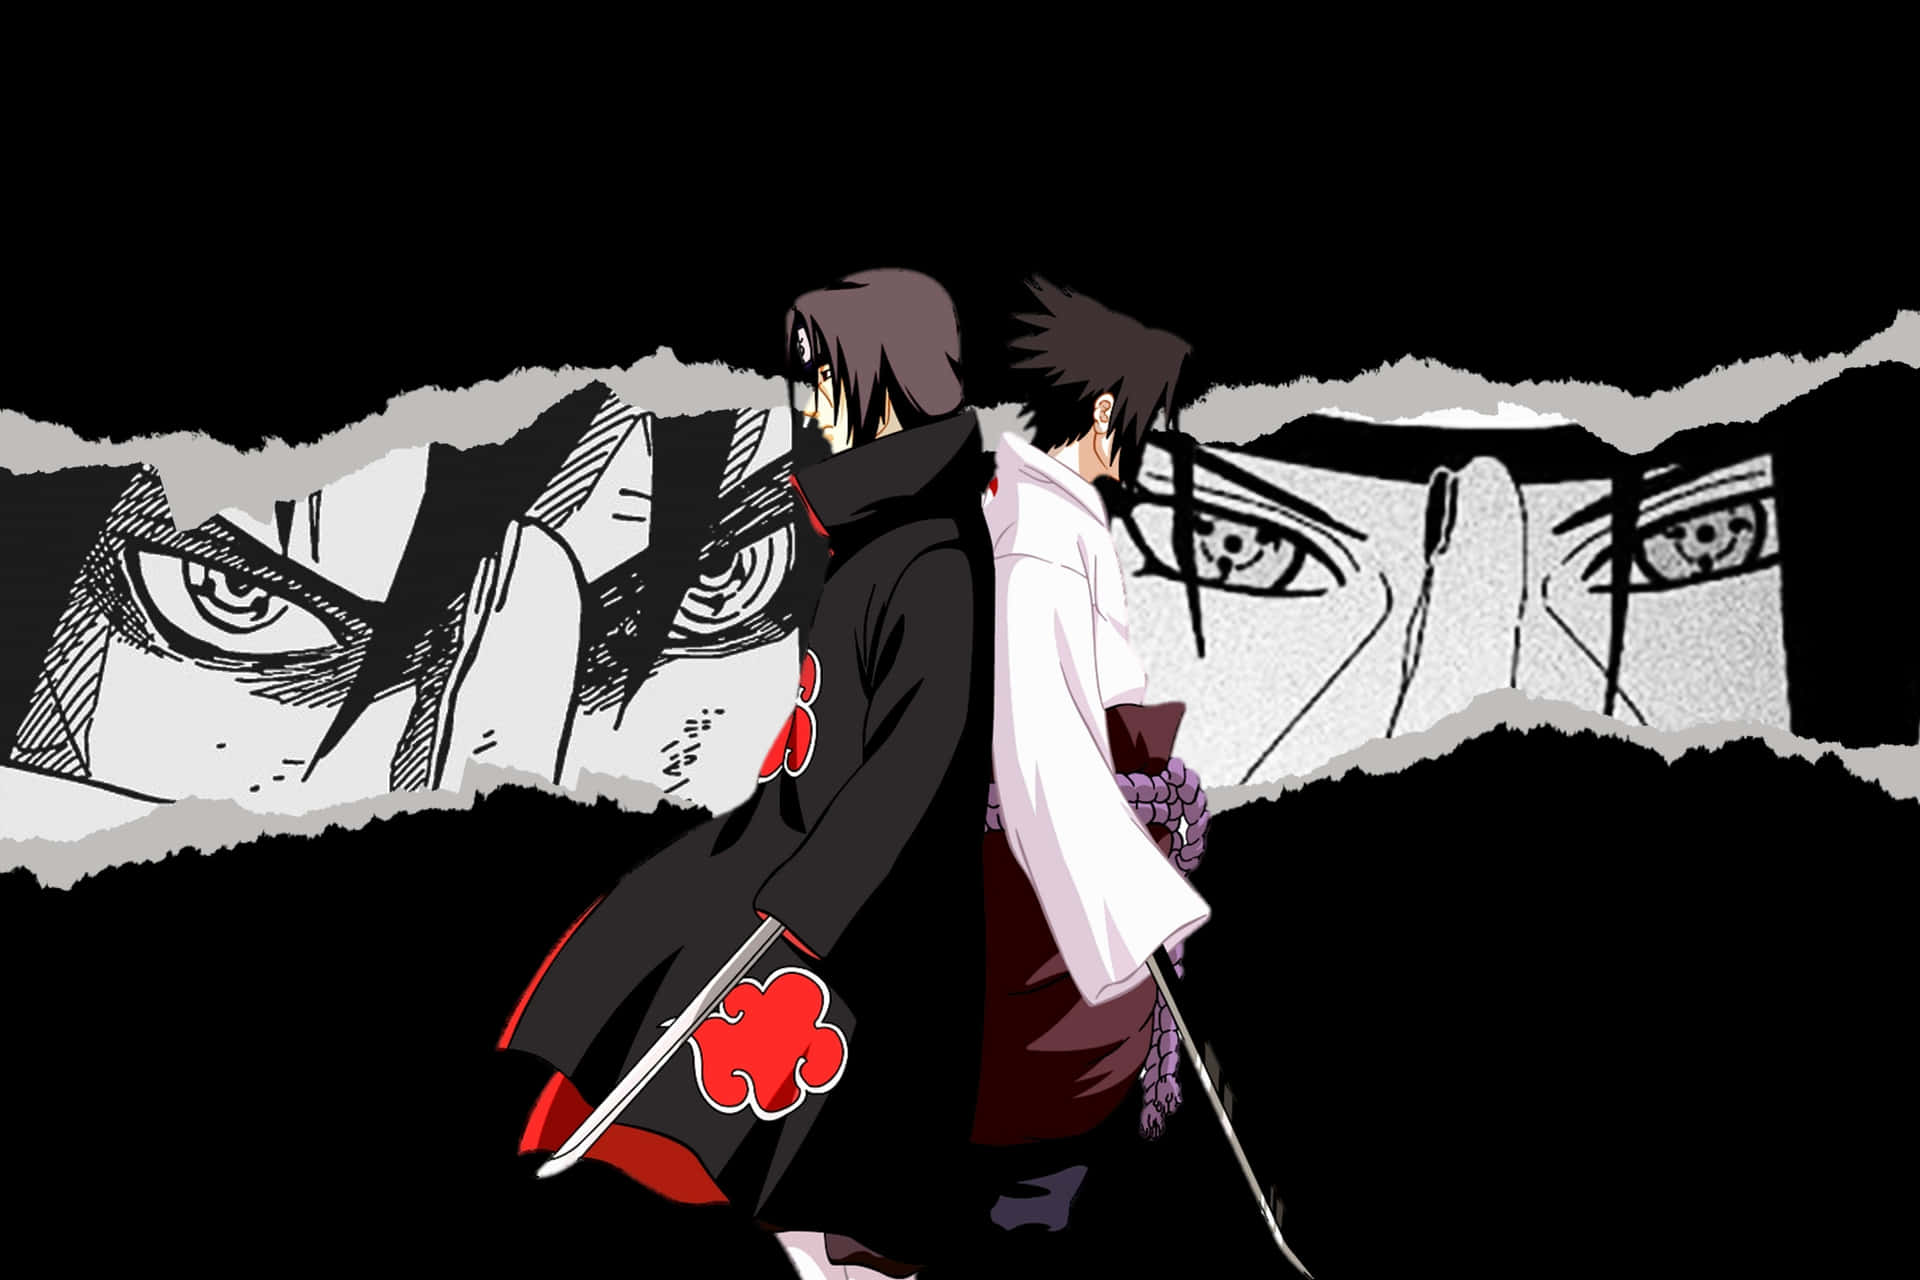 Sasuke Uchiha from manga "Naruto" Wallpaper